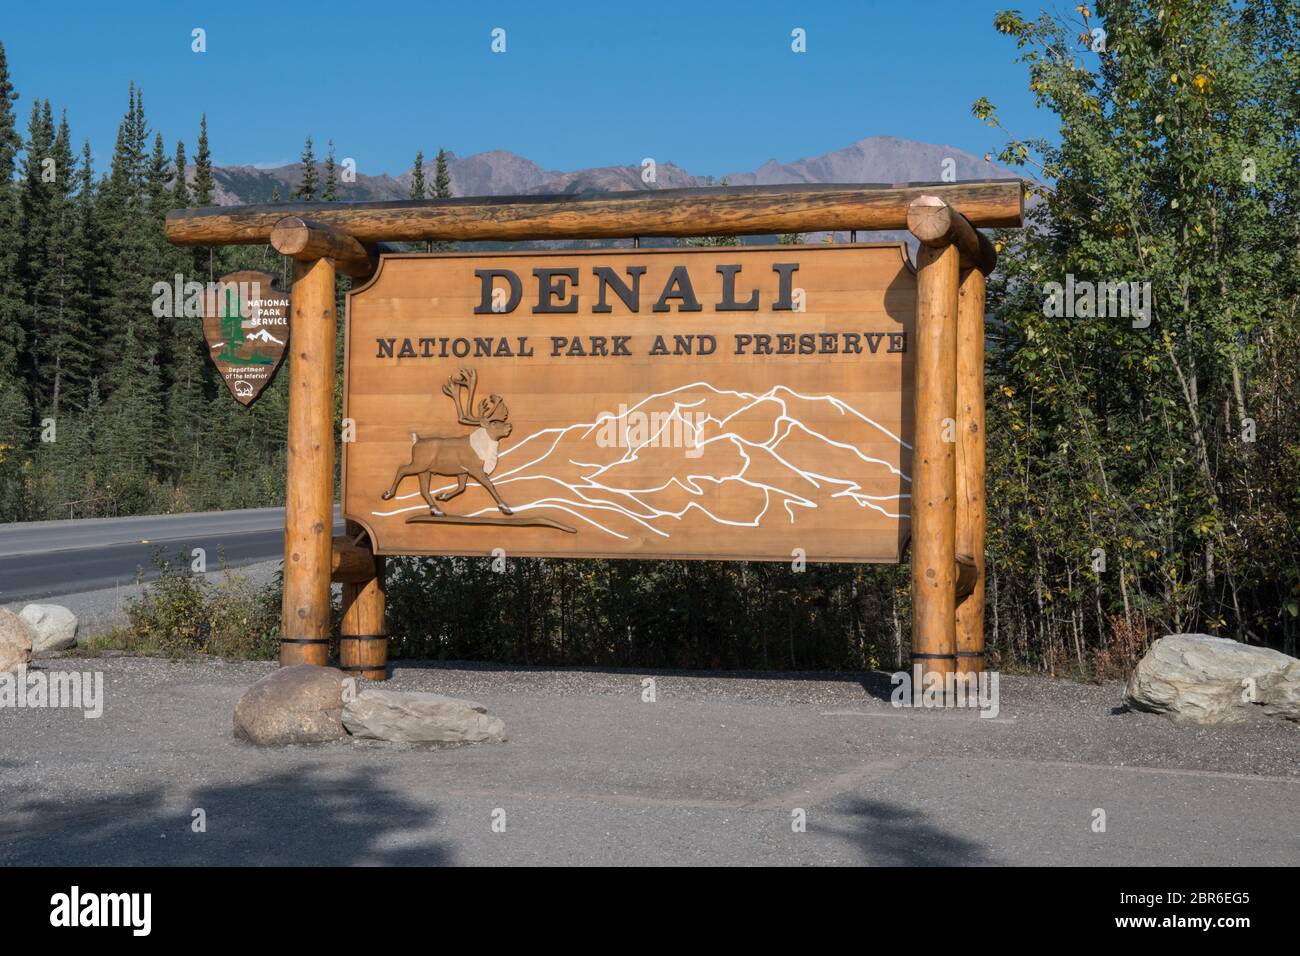 Denali National Park sign showing caribou, Alaska, USA Stock Photo